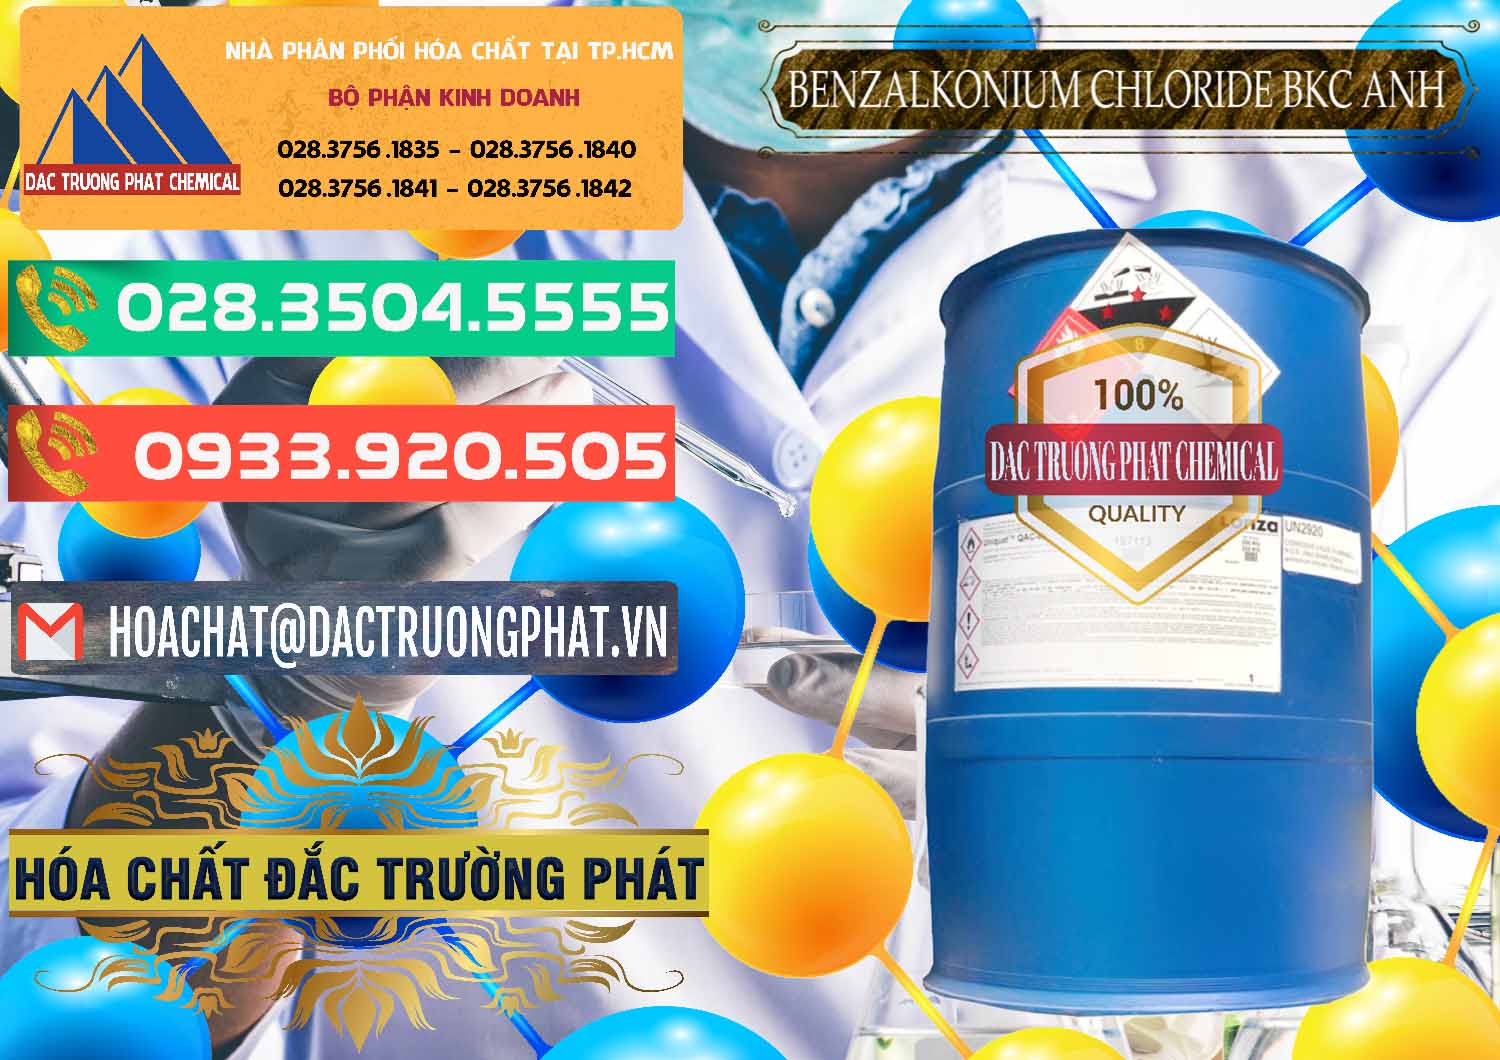 Chuyên phân phối _ bán BKC - Benzalkonium Chloride 80% Anh Quốc Uk Kingdoms - 0457 - Công ty chuyên phân phối _ nhập khẩu hóa chất tại TP.HCM - congtyhoachat.com.vn